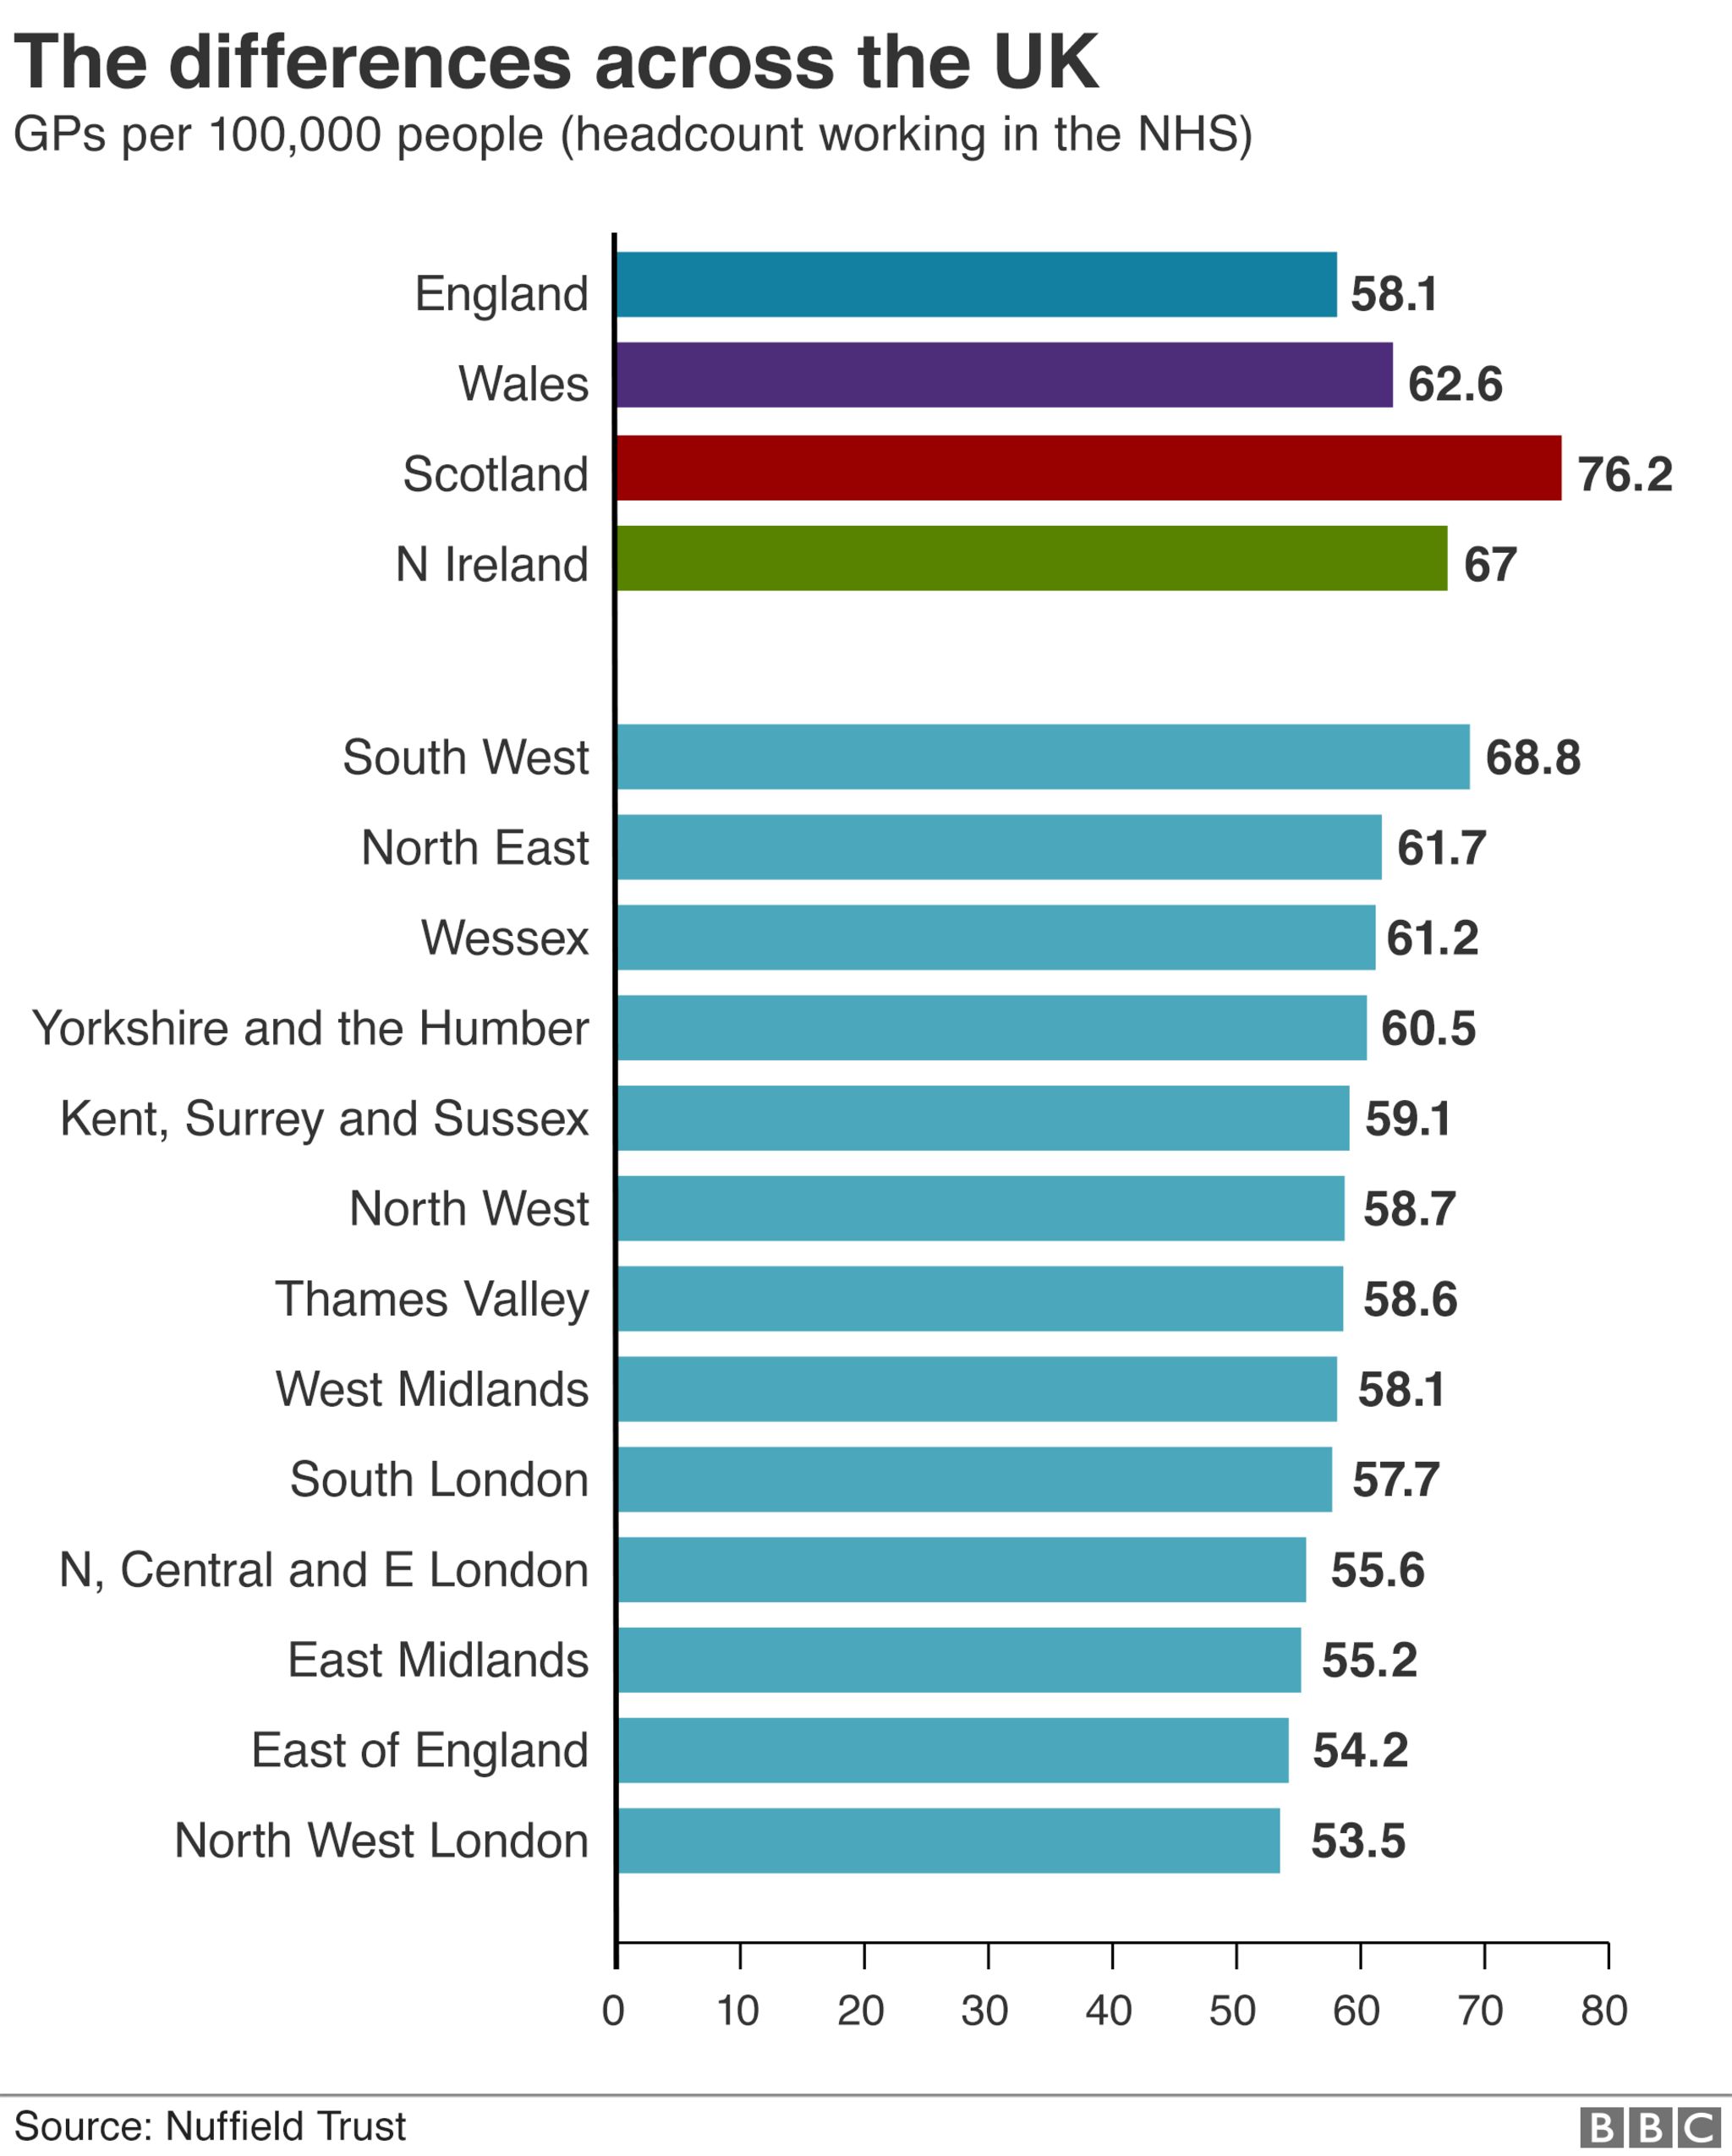 GP numbers by UK region